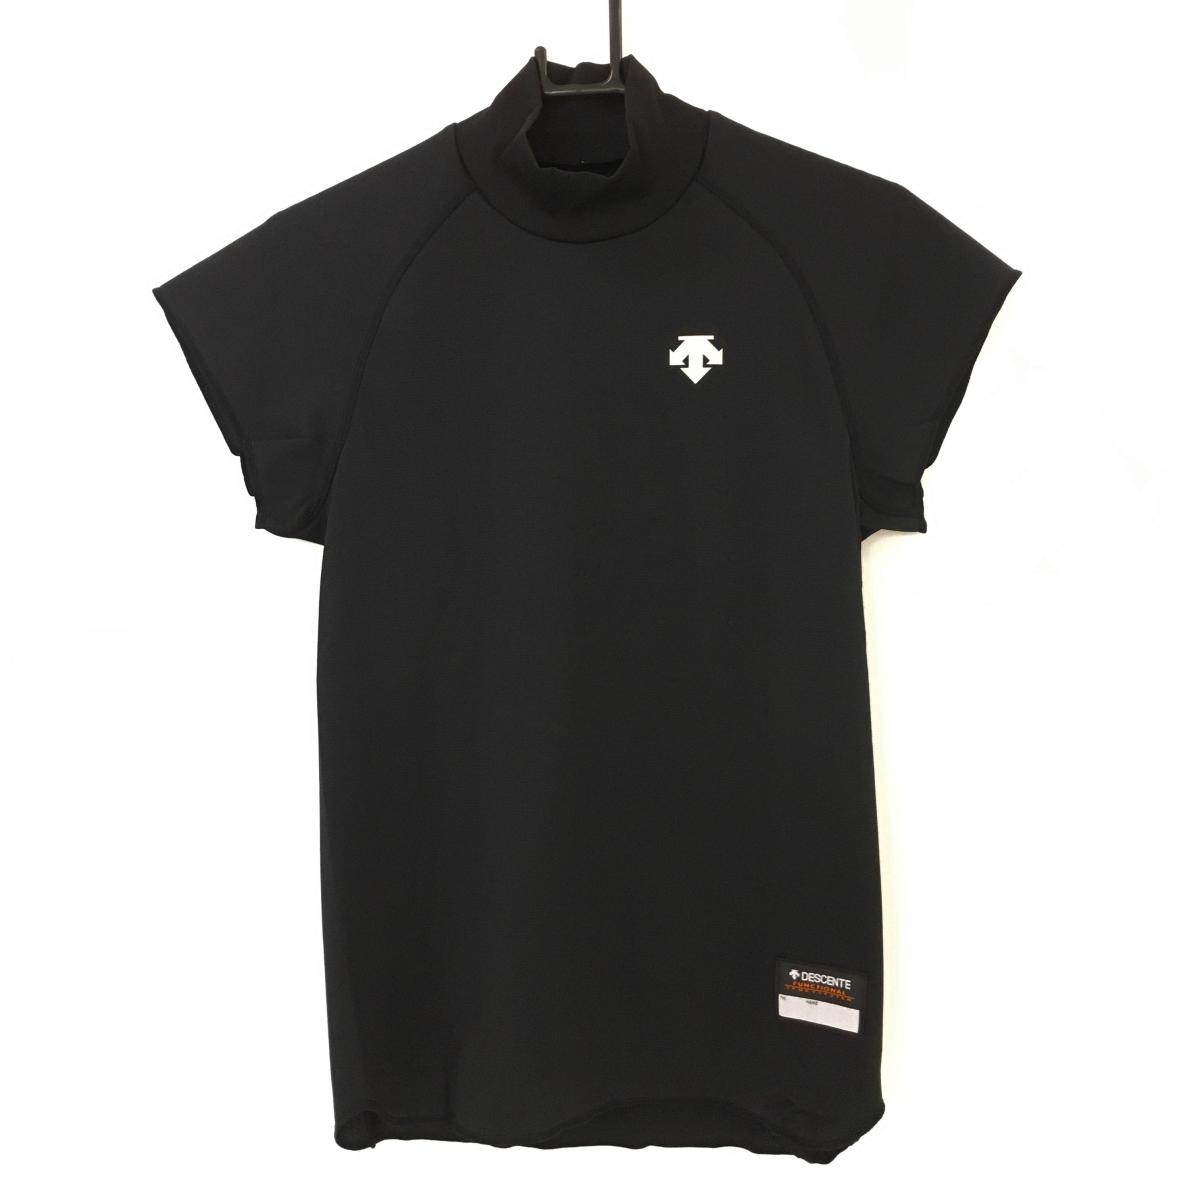 【新品】デサント 半袖ハイネックシャツ 黒 UVカット 3次元吸汗拡散素材 透け防止生地 メンズ S ゴルフウェア DESCENTE